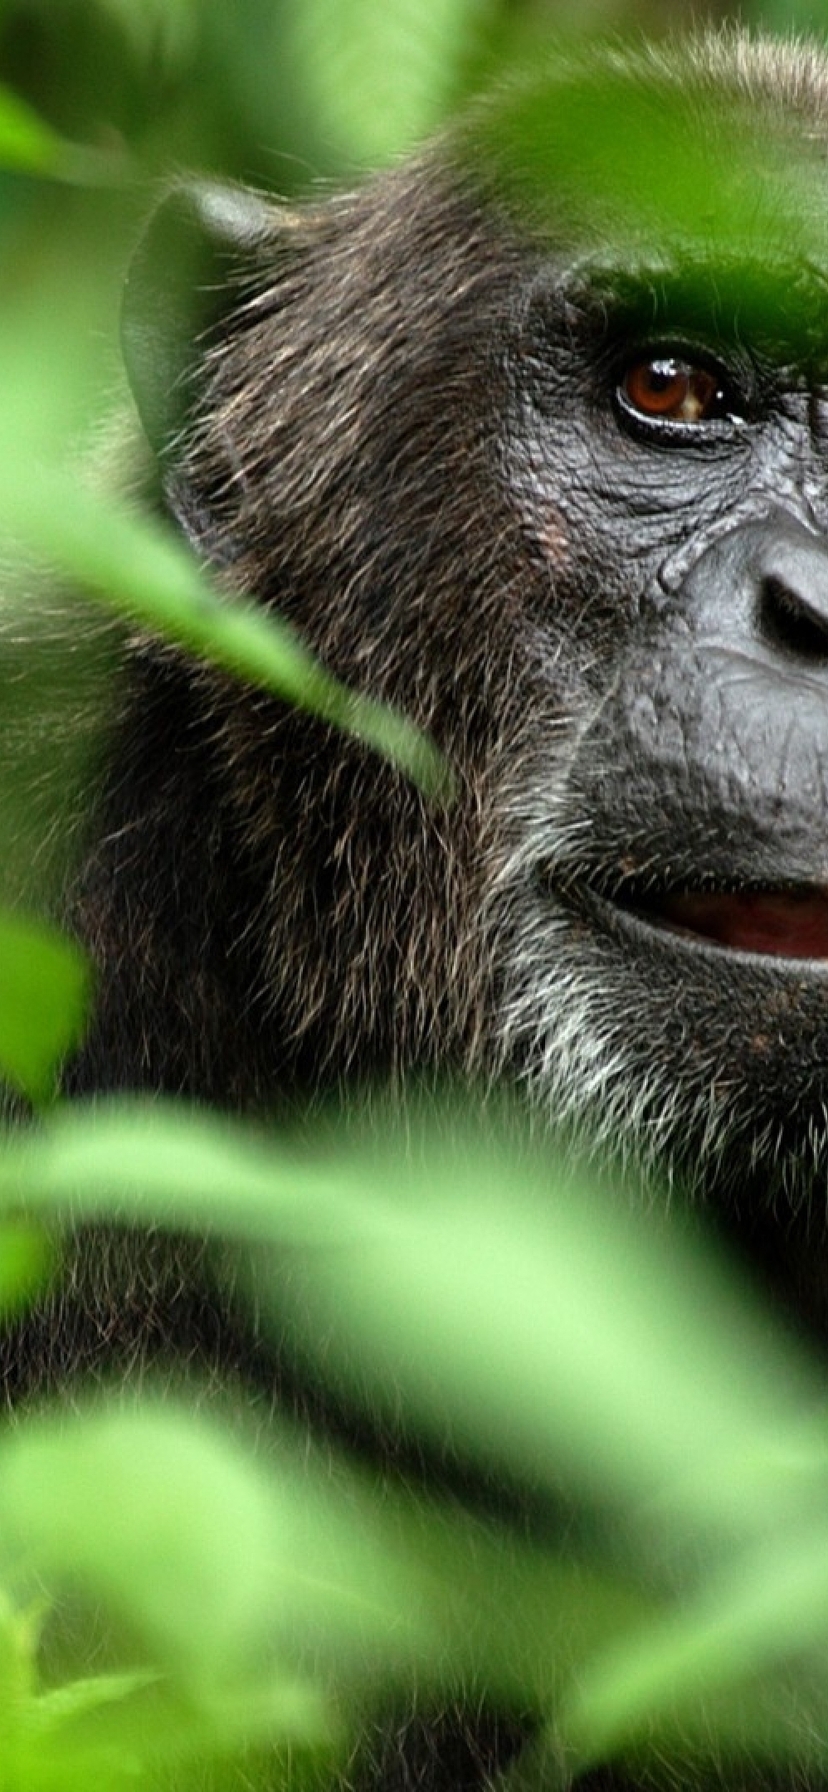 Image: Monkey, chimpanzee, jungle, branches, leaves, muzzle, eyes